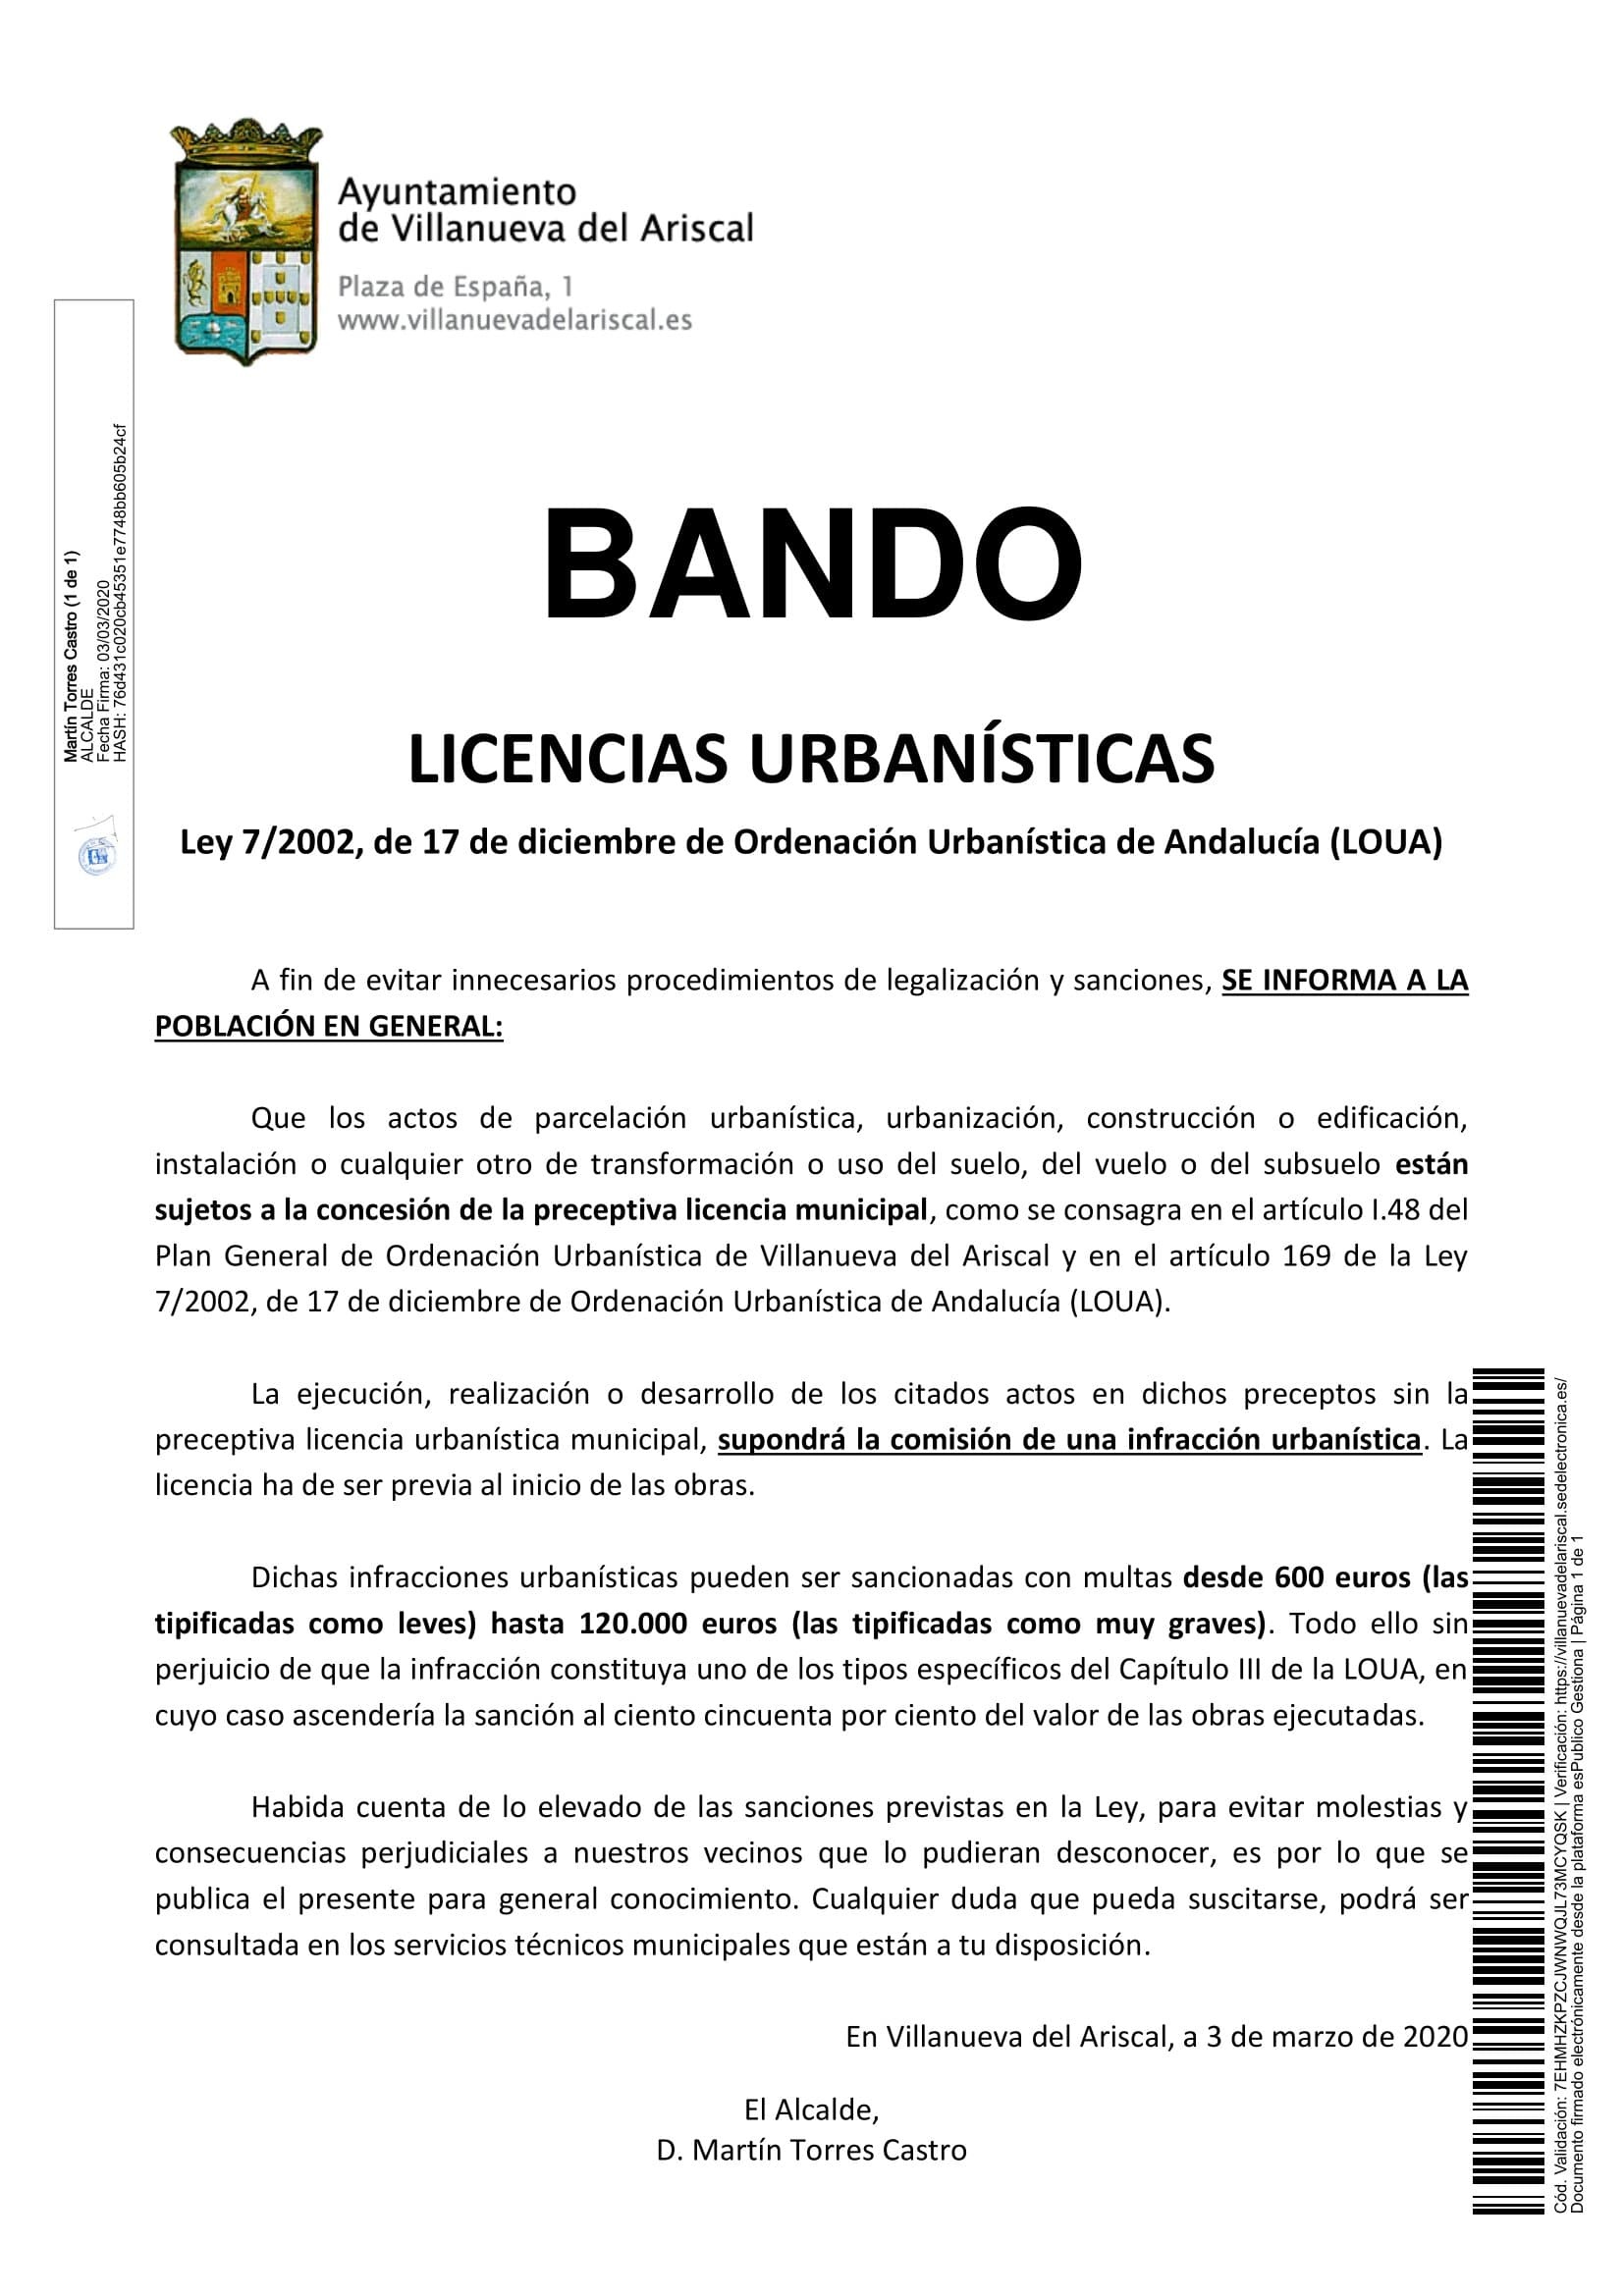 20200303_Publicación_Bando_019_bando sobre obligatoriedad licencias urbanísticas